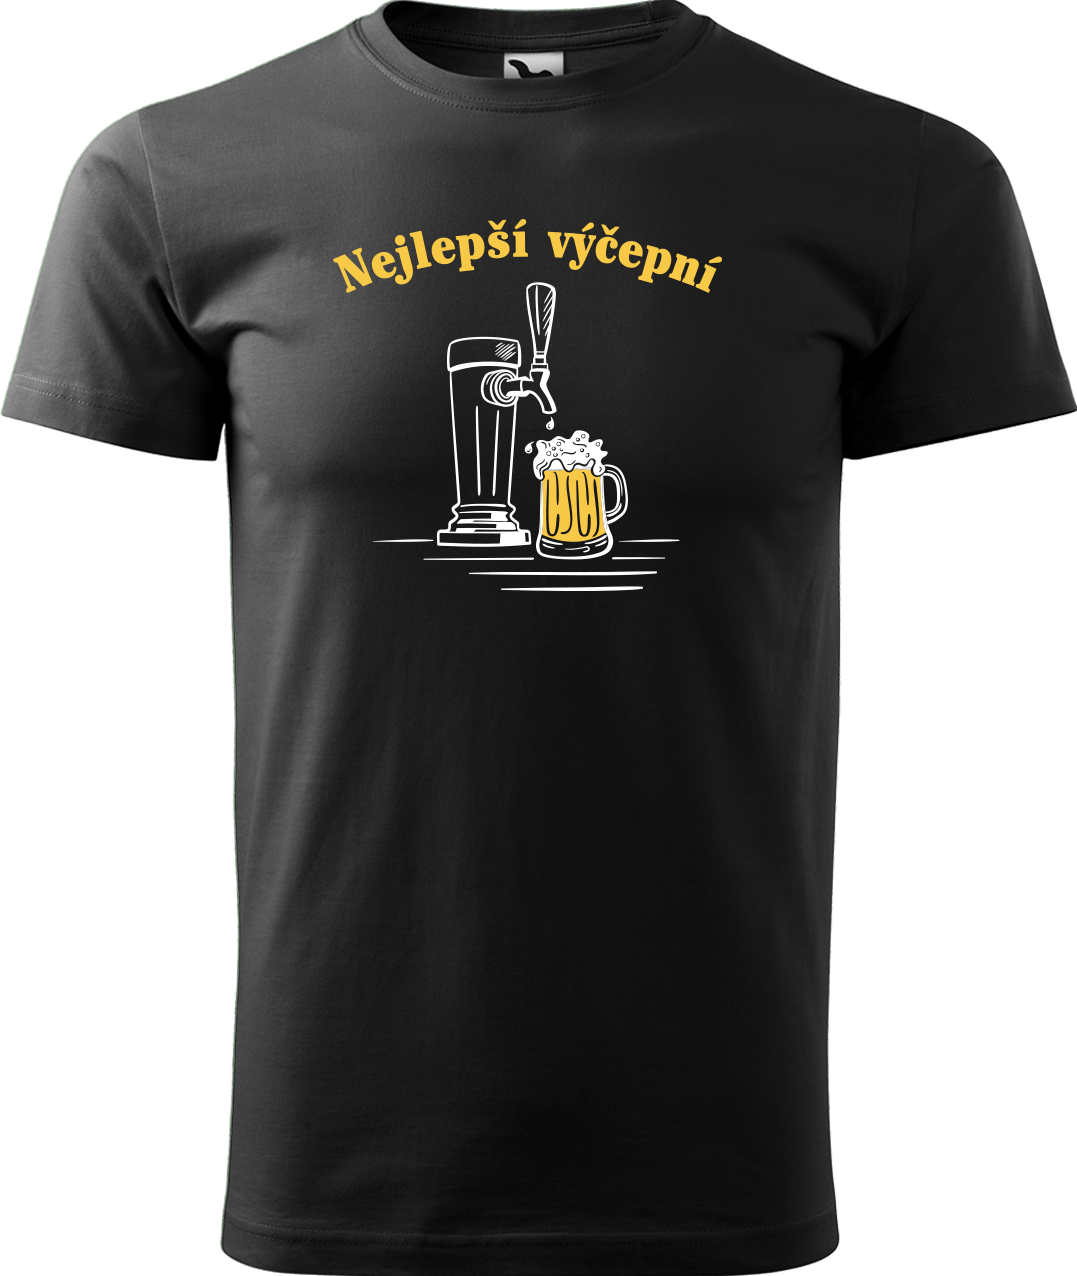 Pivní tričko - Nejlepší výčepní Velikost: M, Barva: Černá (01)